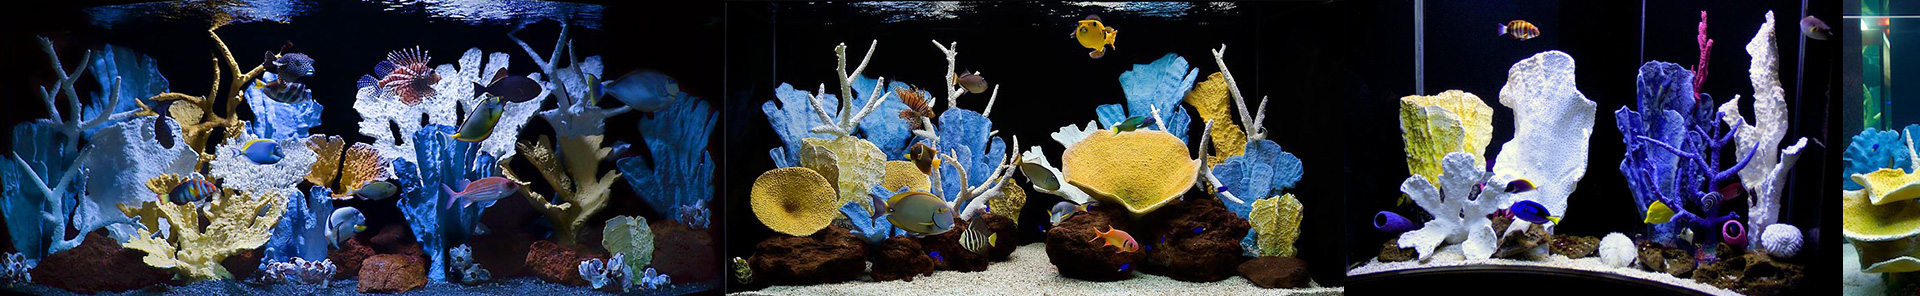 Искусственный коралловый риф в большом аквариуме